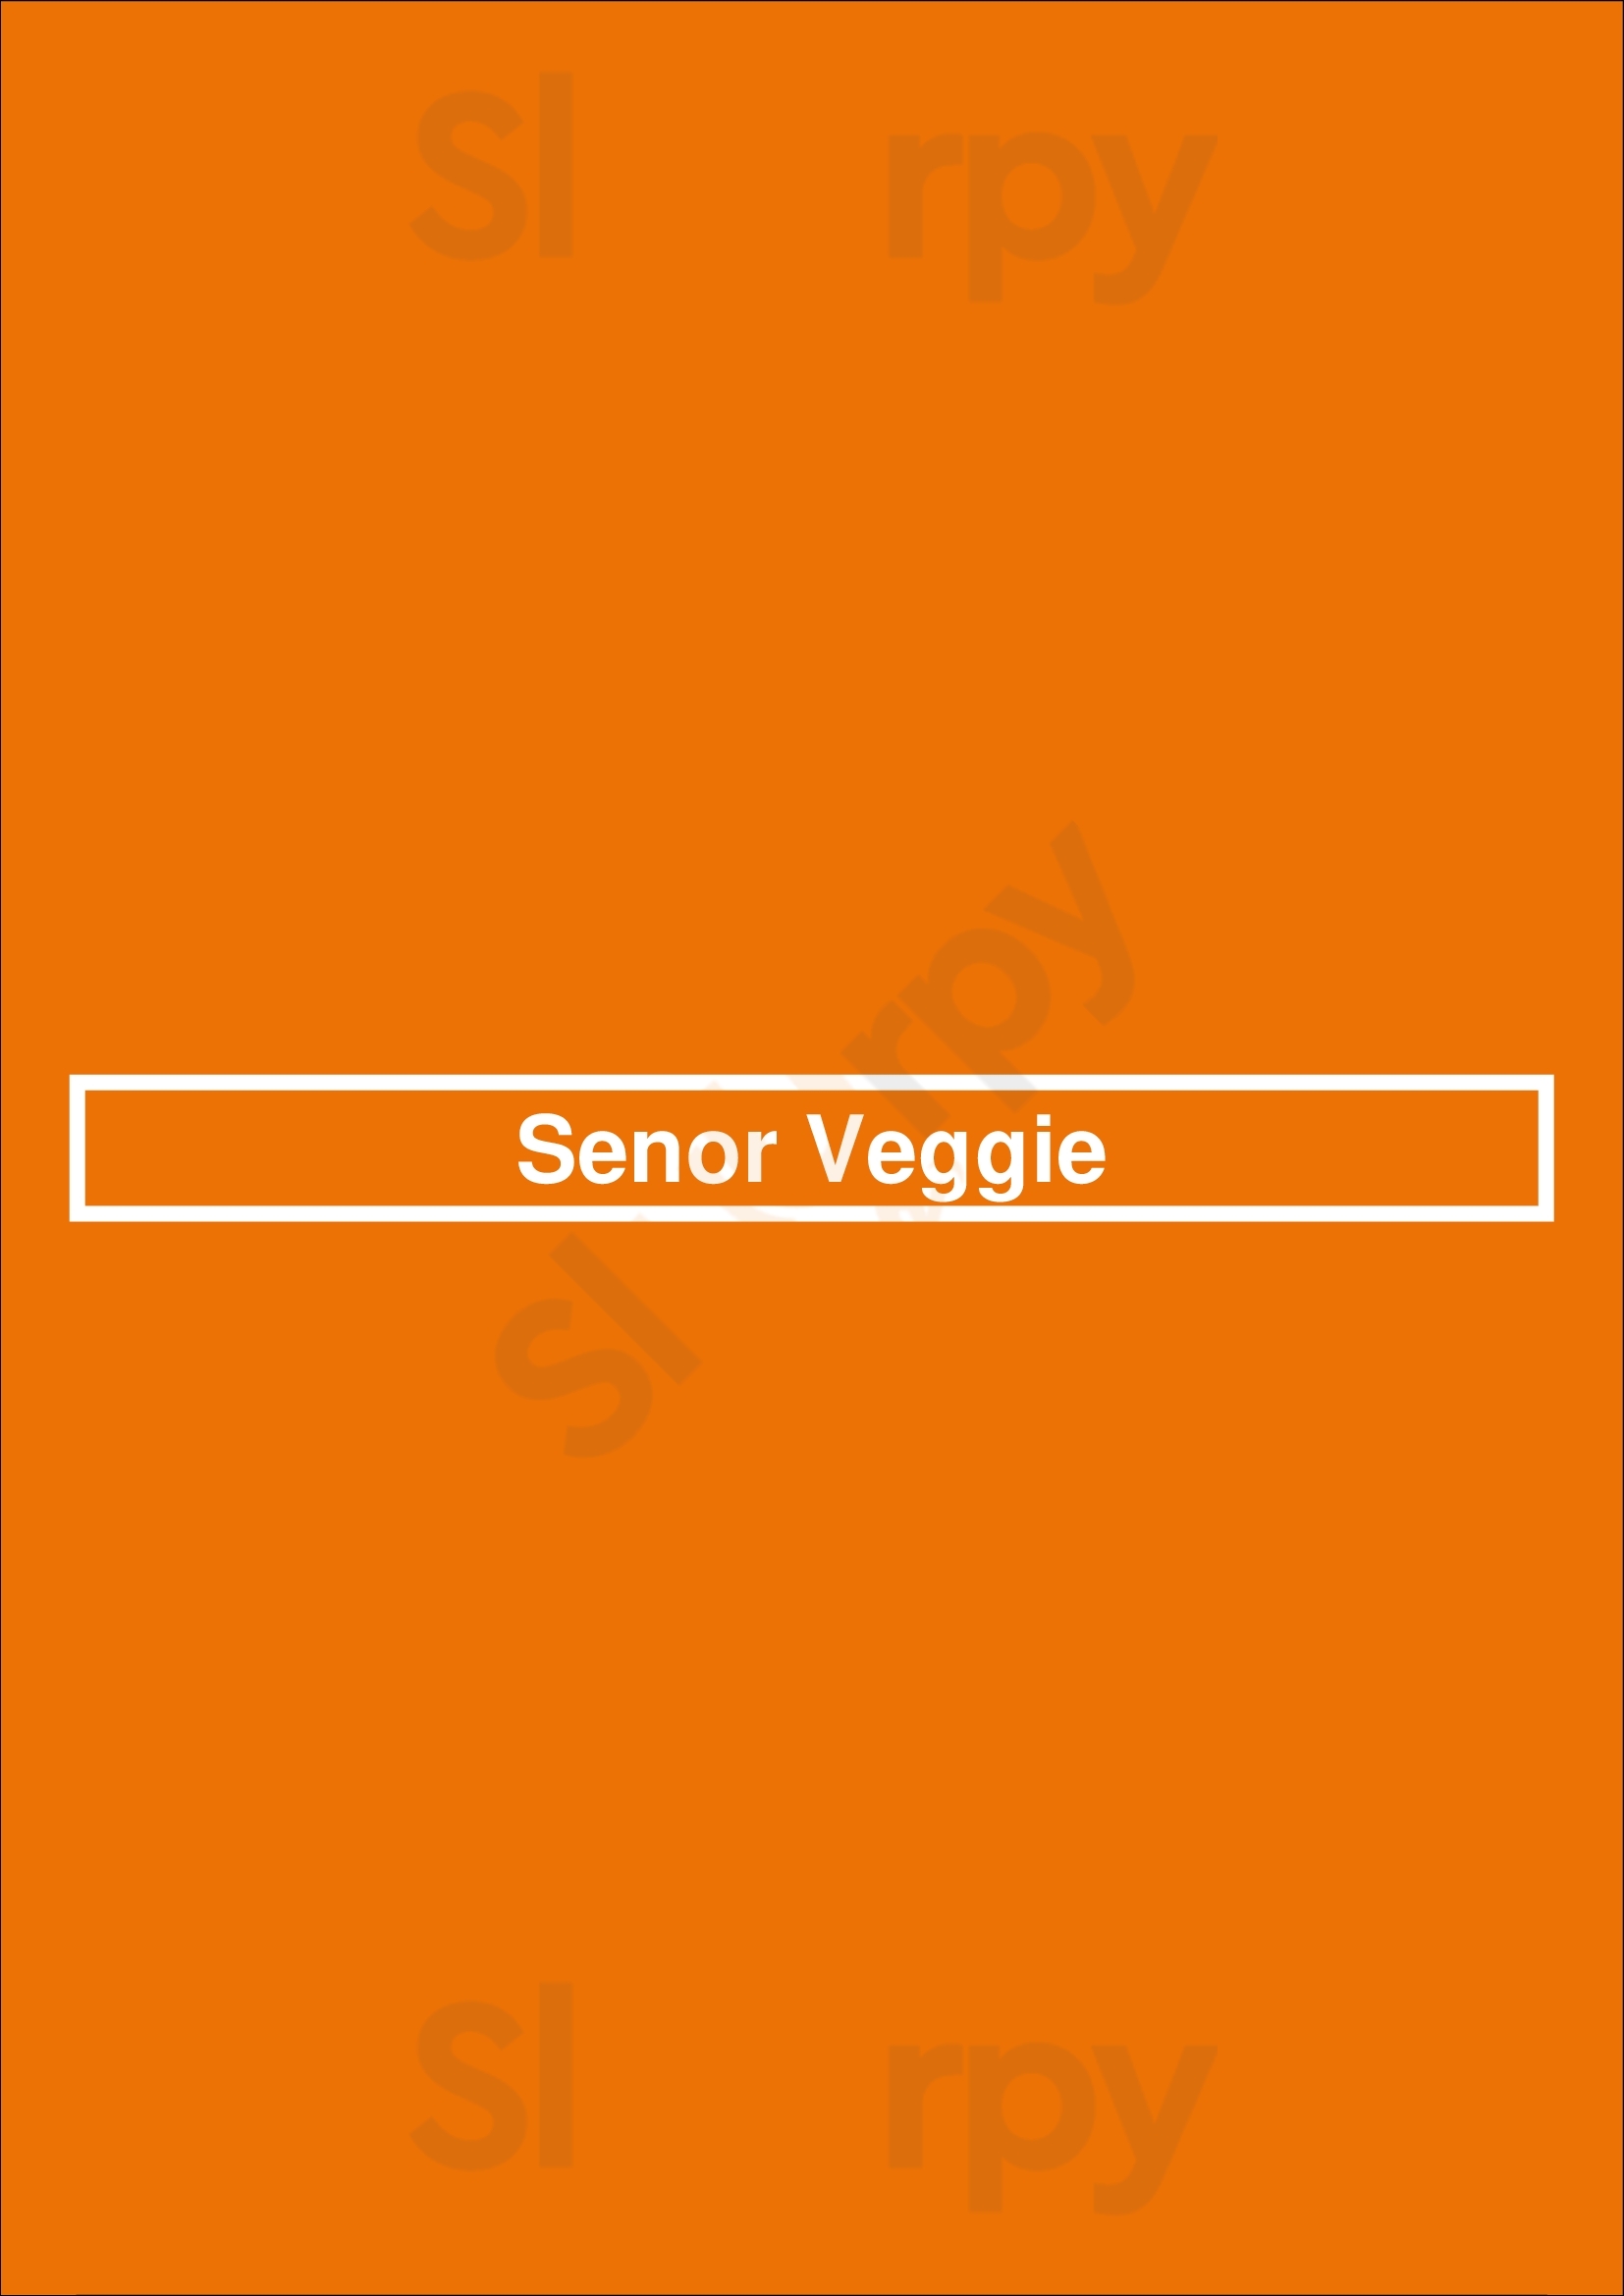 Senor Veggie San Antonio Menu - 1